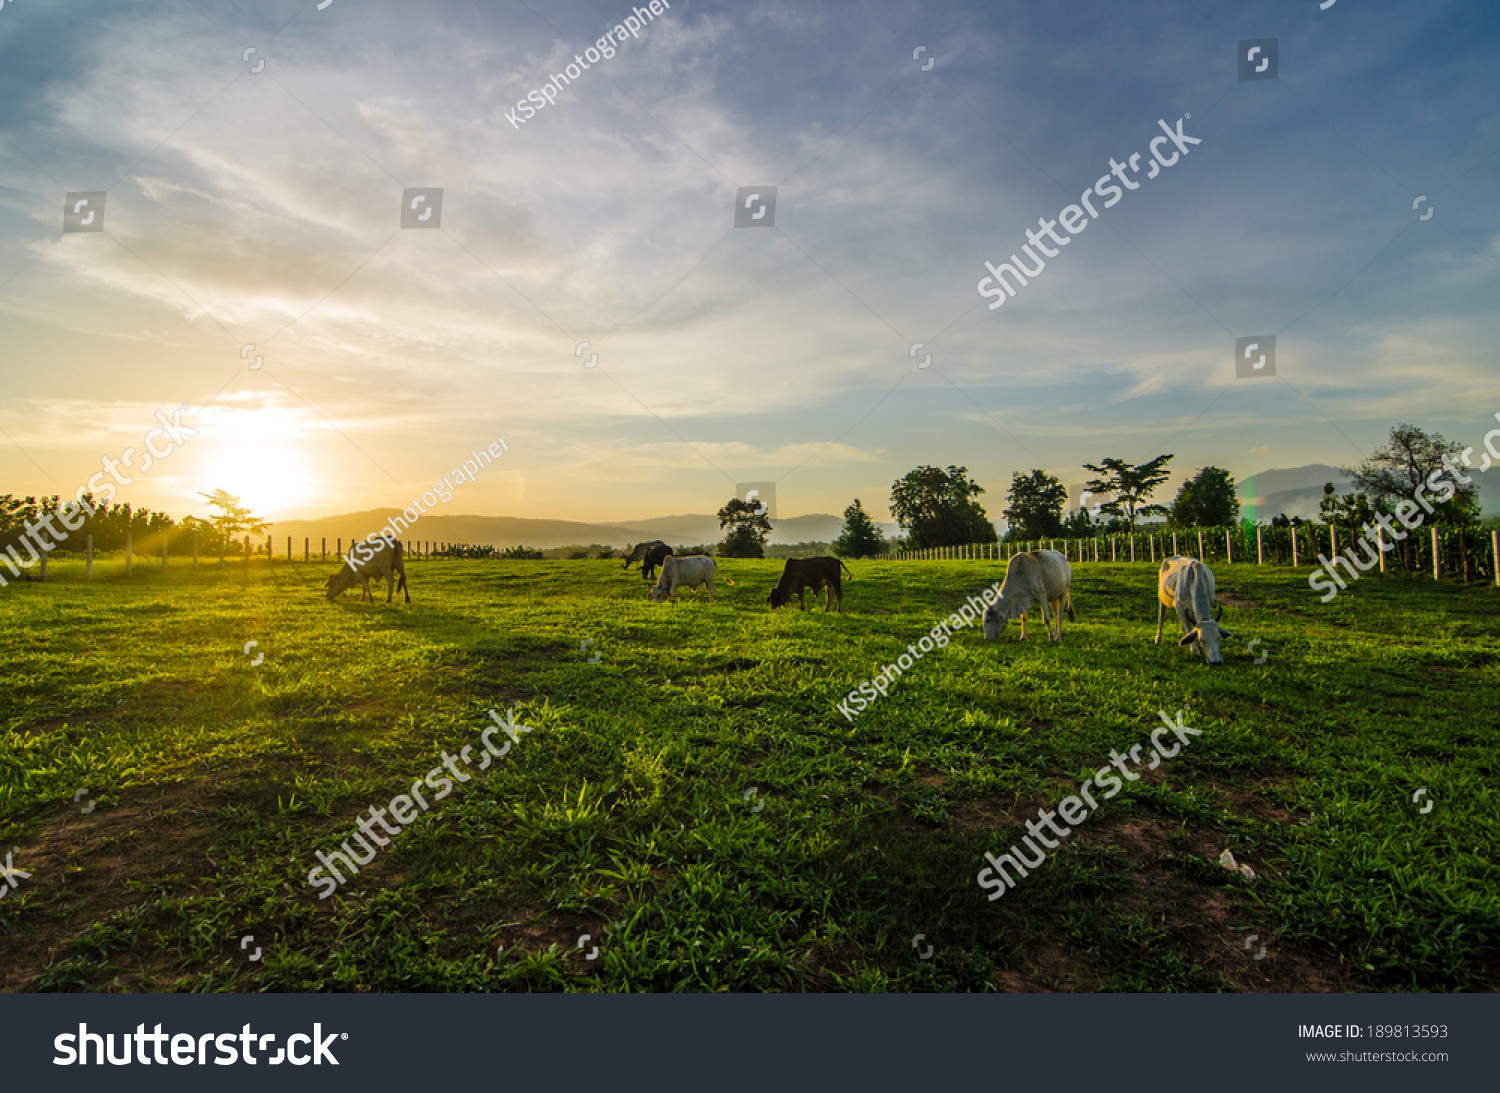 Farm cow on sunrise #189813593